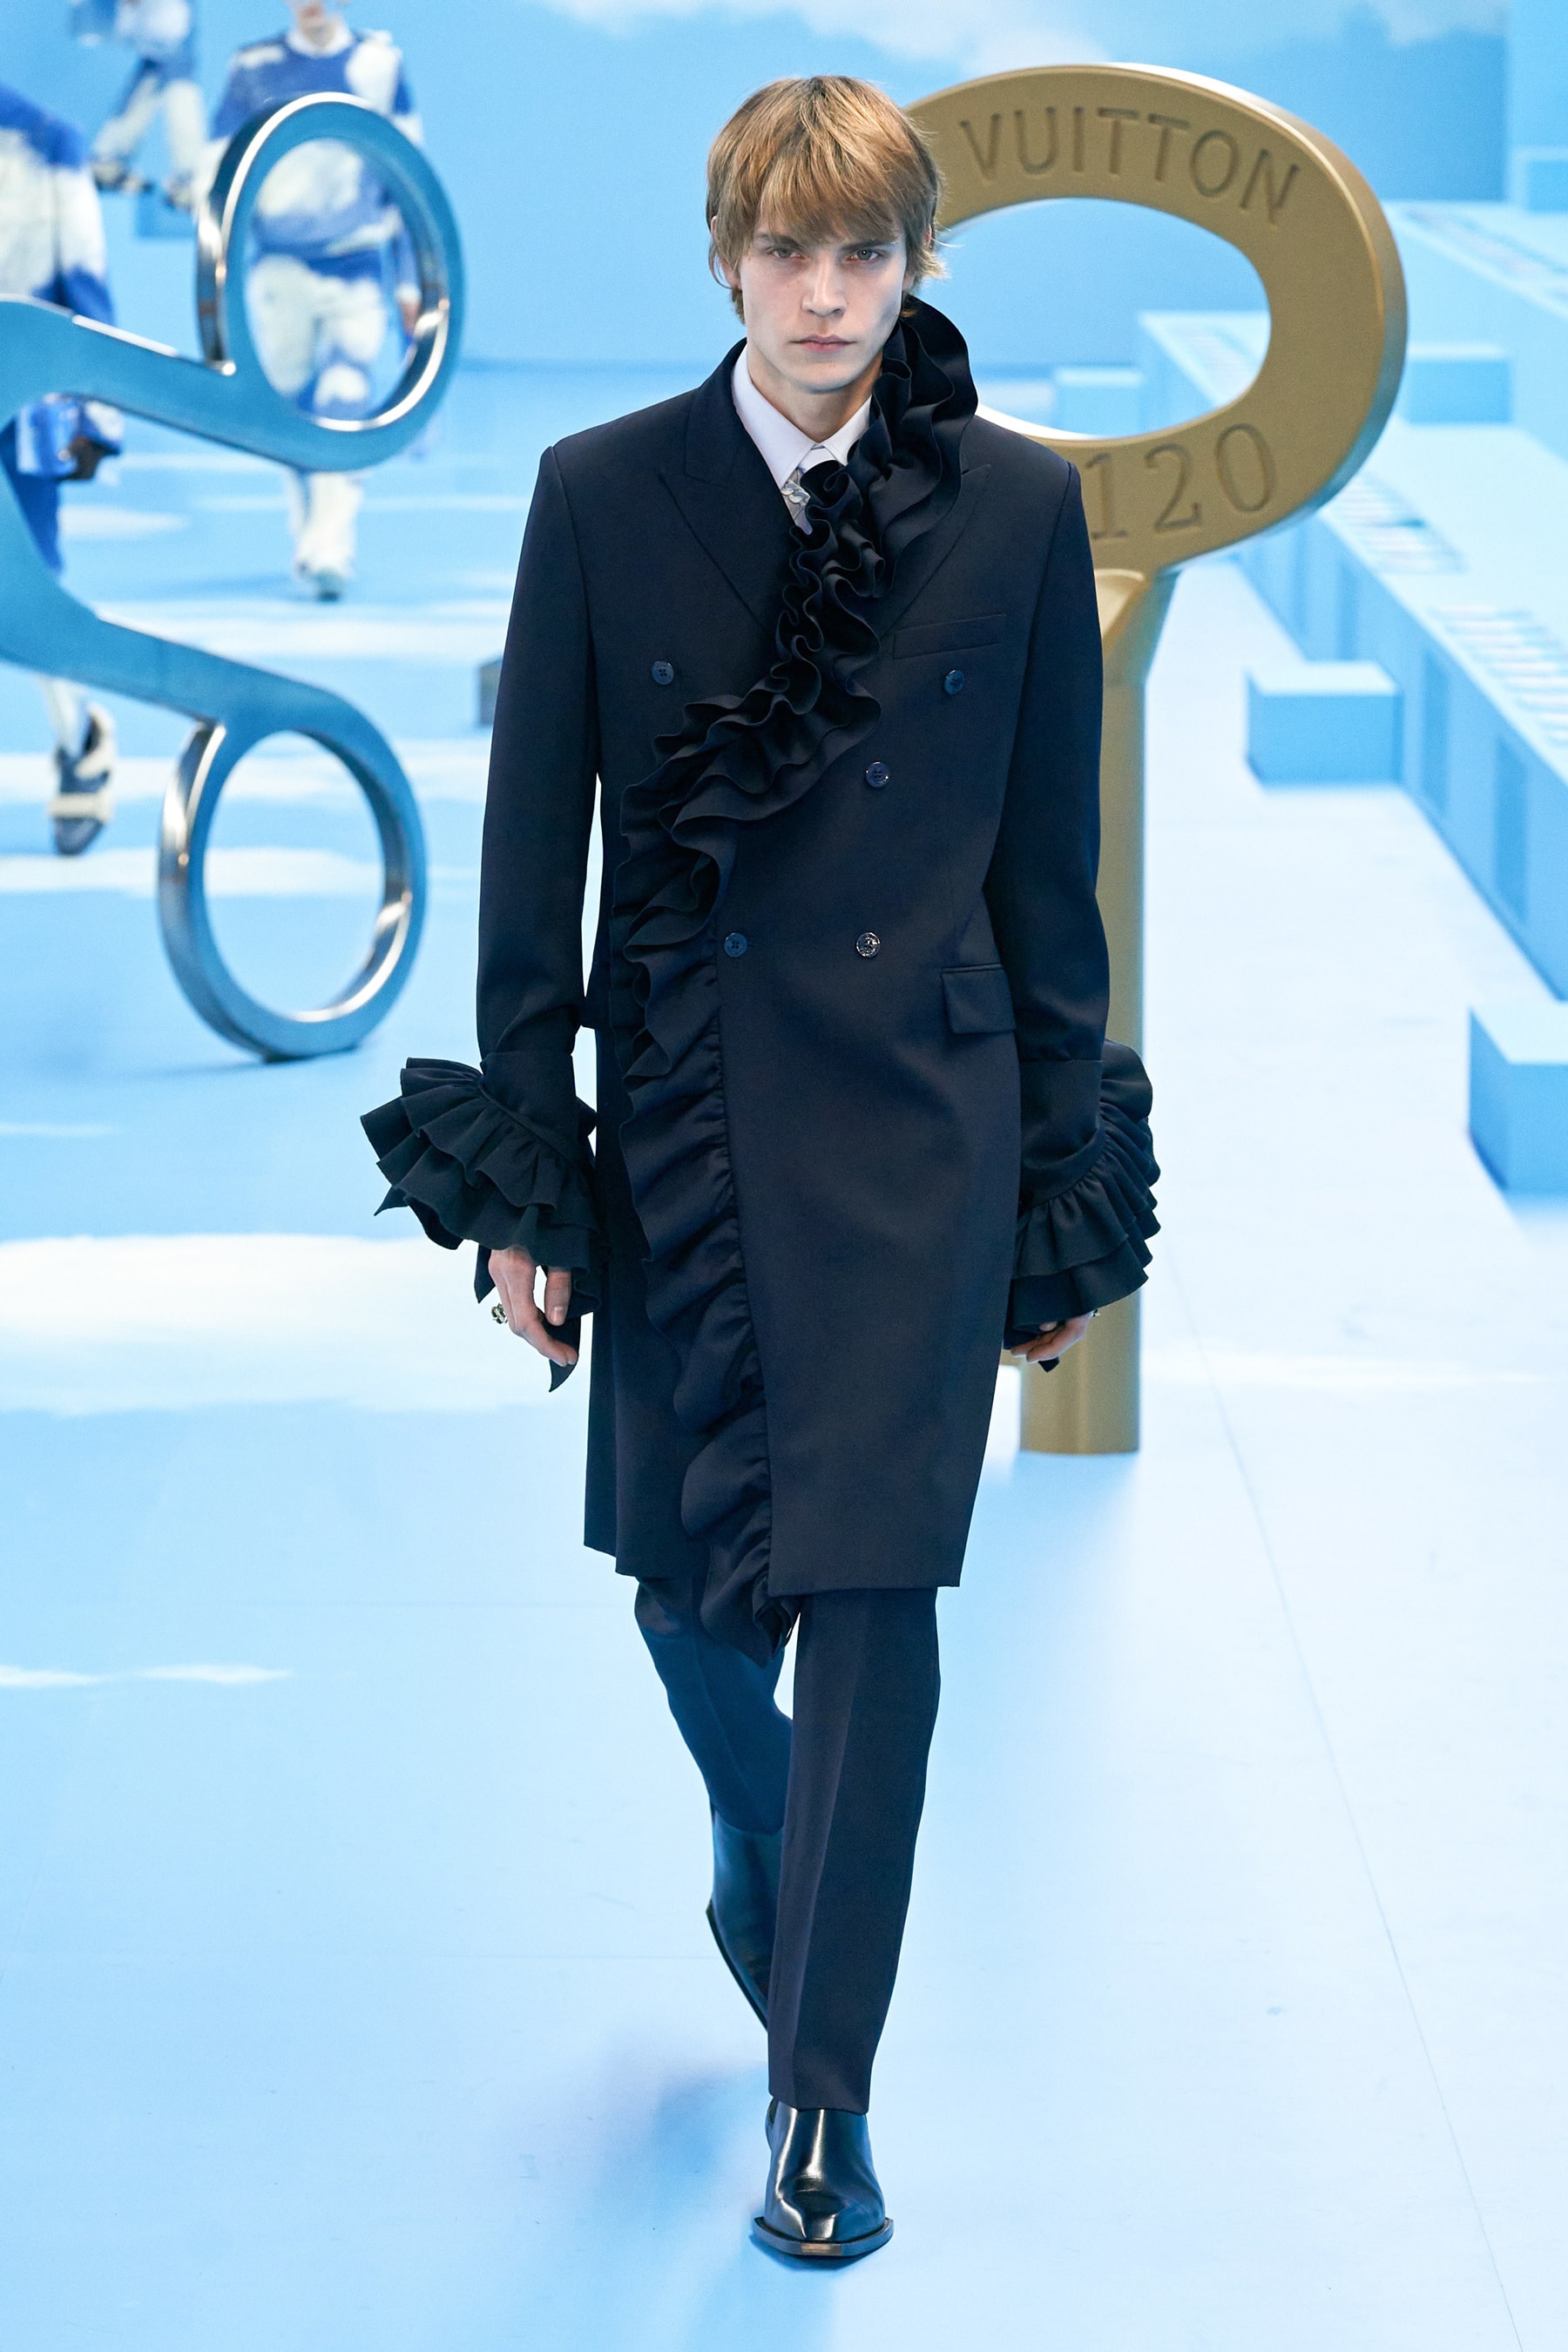 ルイ・ヴィトン 2020年秋冬コレクション Louis Vuitton fw20 Paris Fashion Week Runway Show mens fall winter 2020 virgil abloh